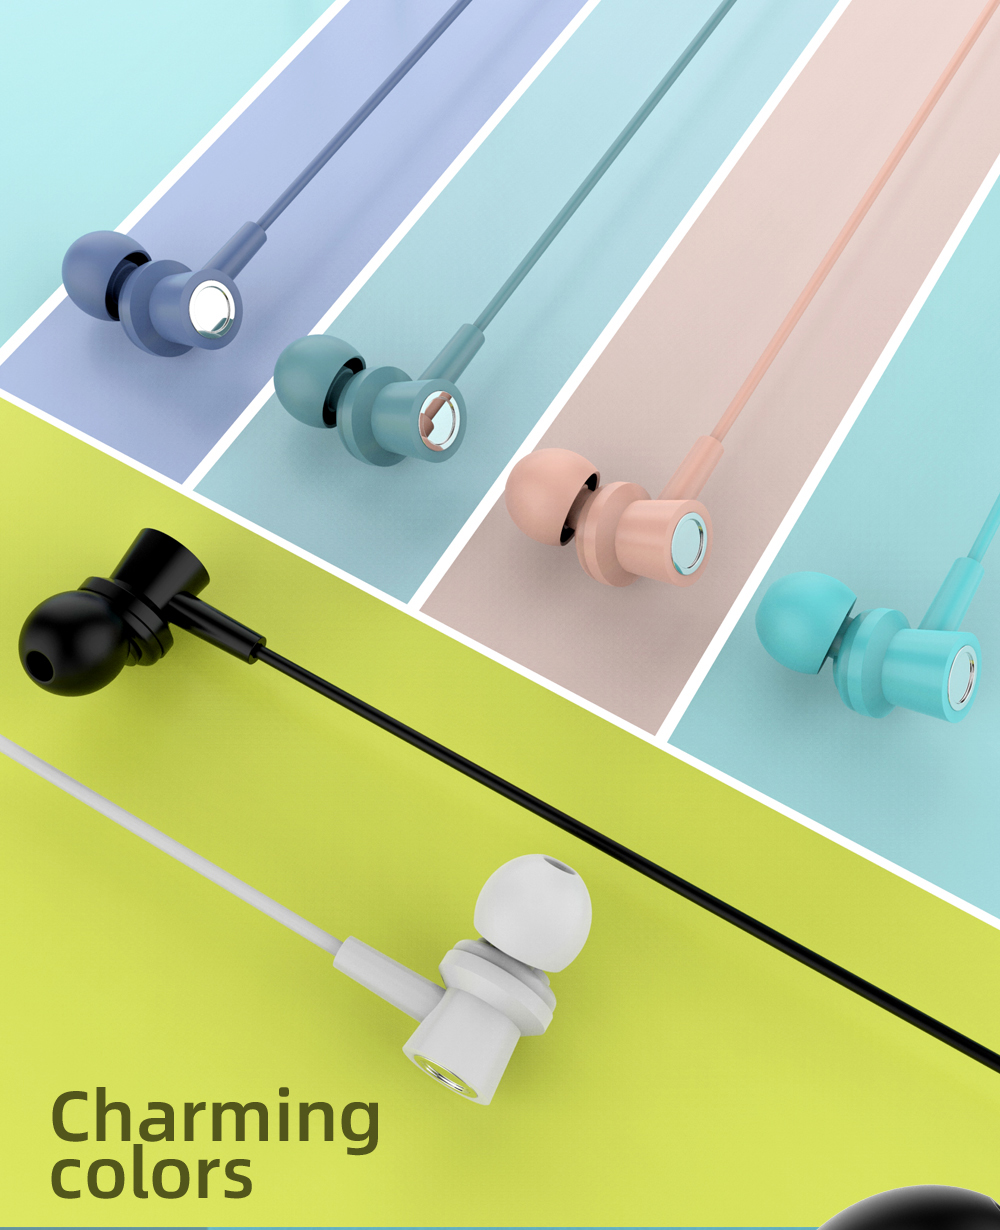 R17彩色手机线控耳机有线耳机 活塞入耳 带包装出货 安卓iOS系统通用详情2